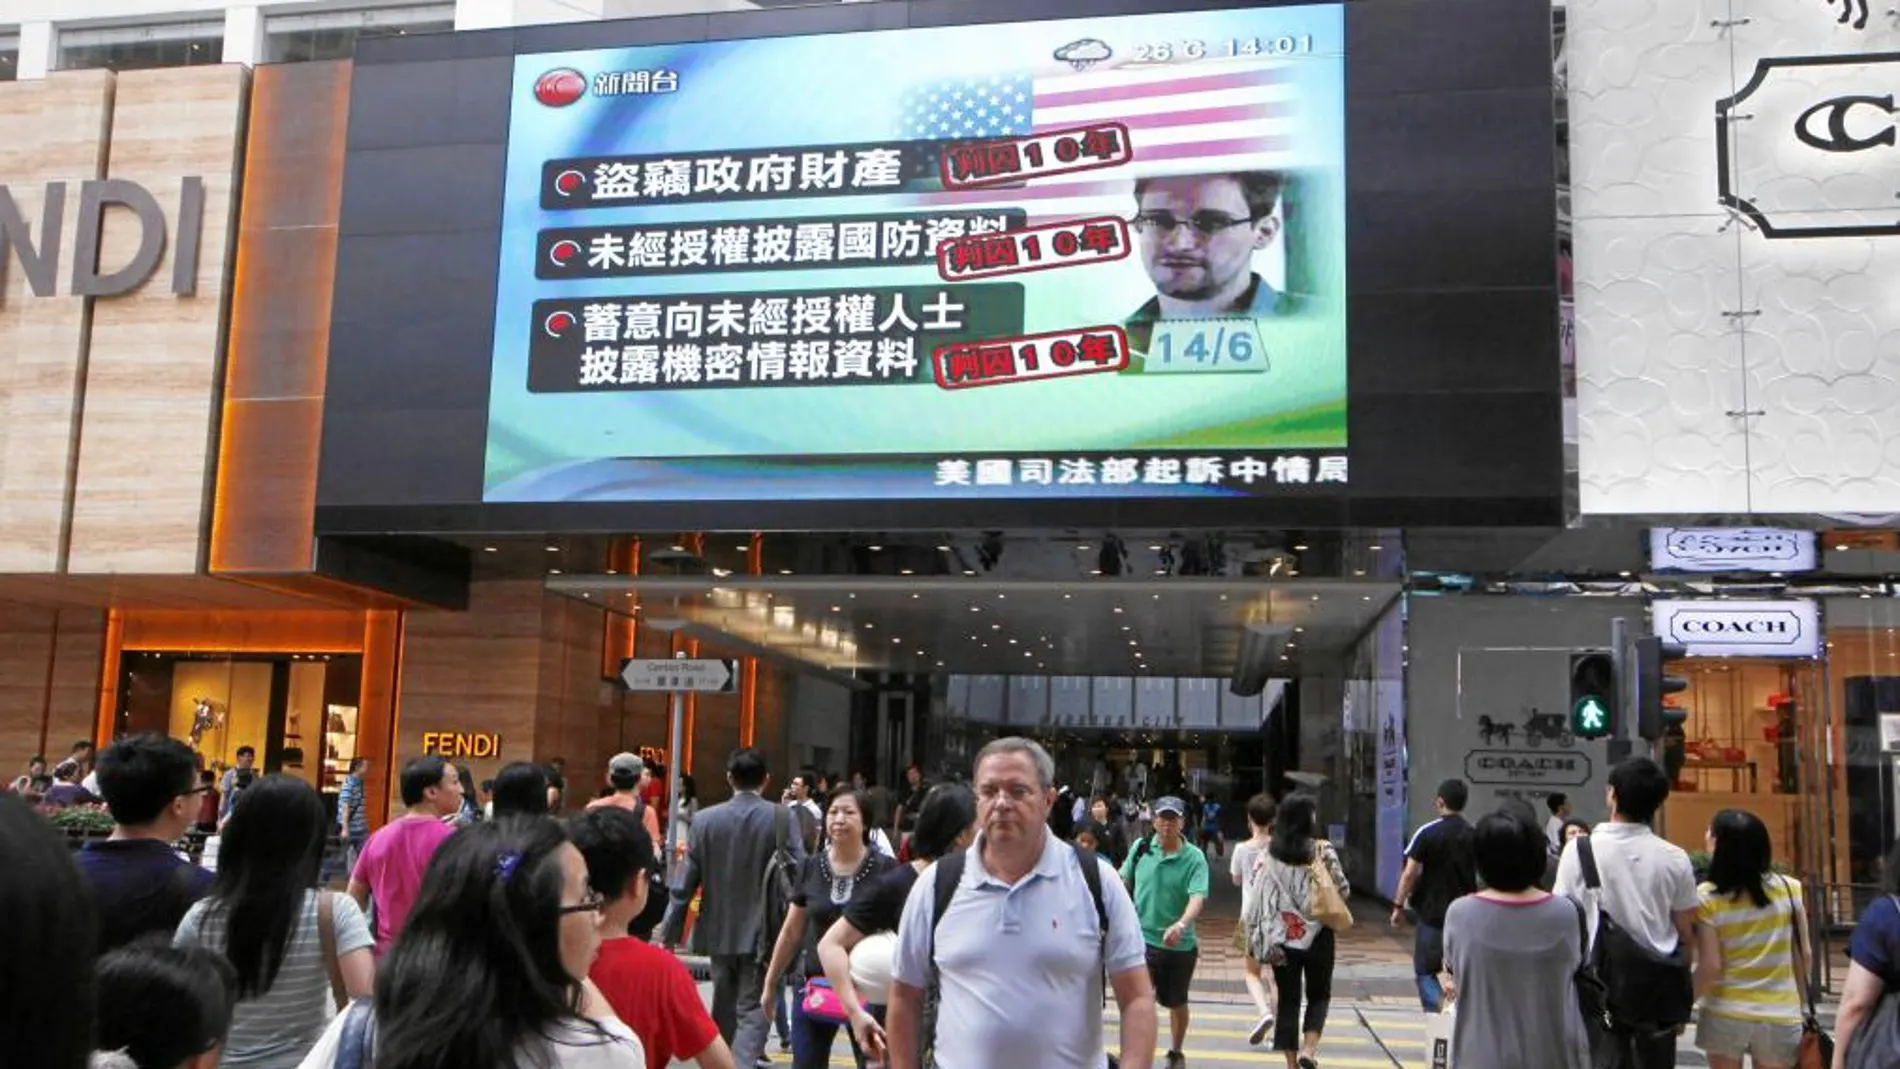 Una pantalla de televisión de un centro comercial de Hong Kong muestra las últimas noticias acerca del ex empleado de la CIA, Edward Snowden, ayer sábado, tras conocerse que EE UU le acusa de espionaje y que pedirá su extradición.